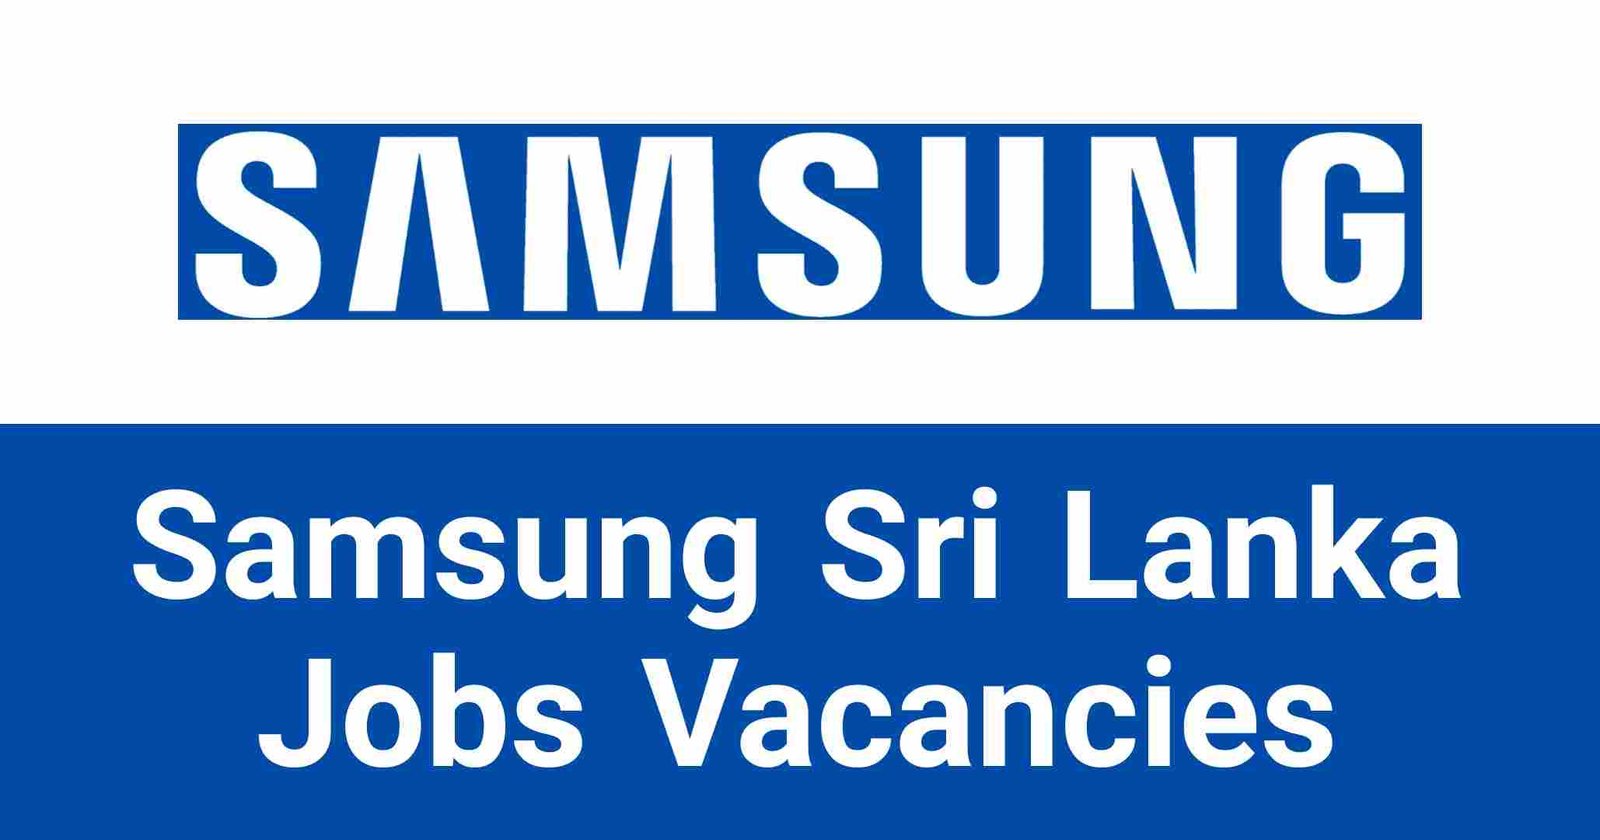 Samsung Sri Lanka Jobs Vacancies